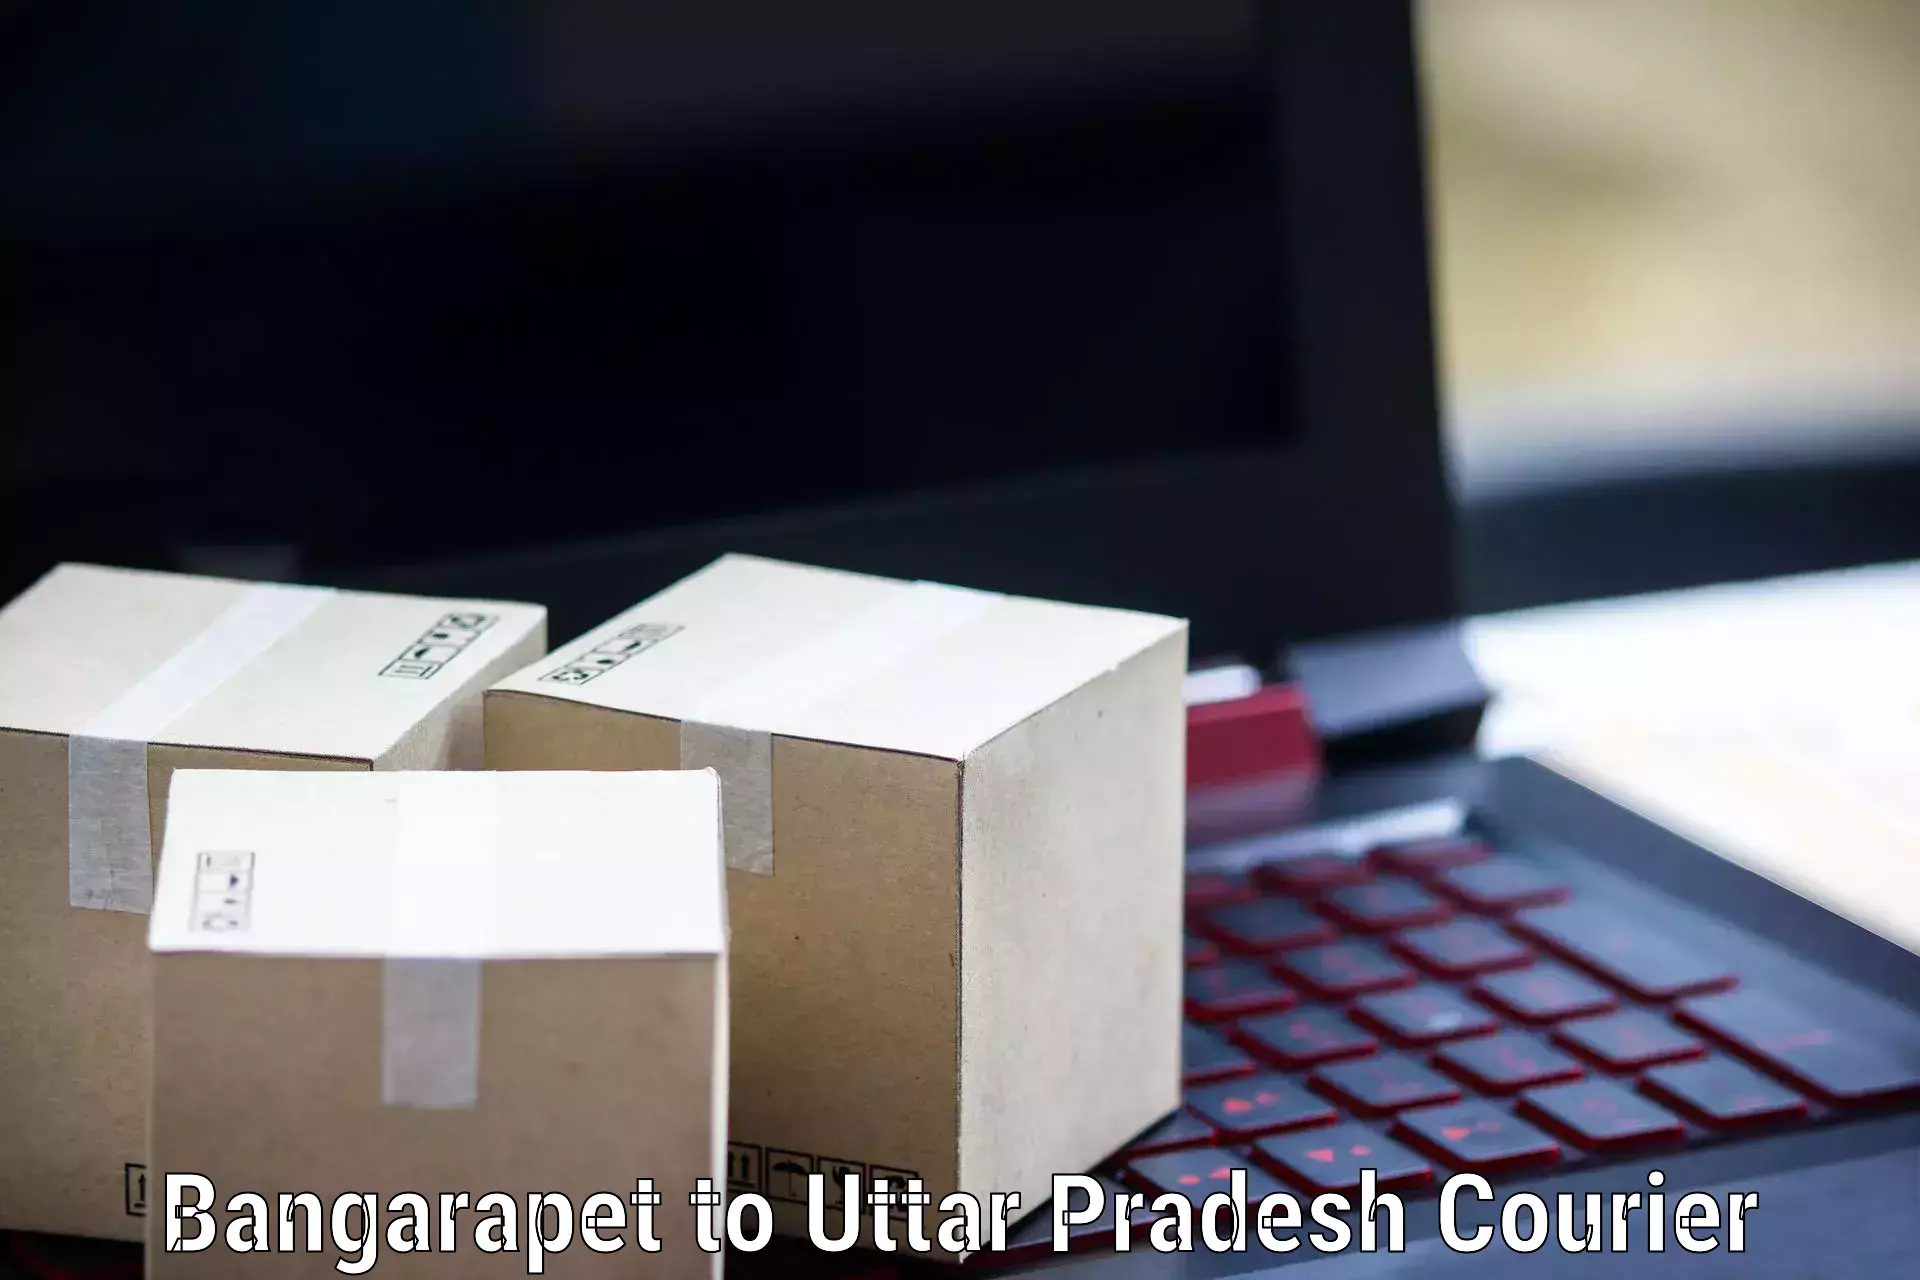 Digital courier platforms Bangarapet to Lal Gopalganj